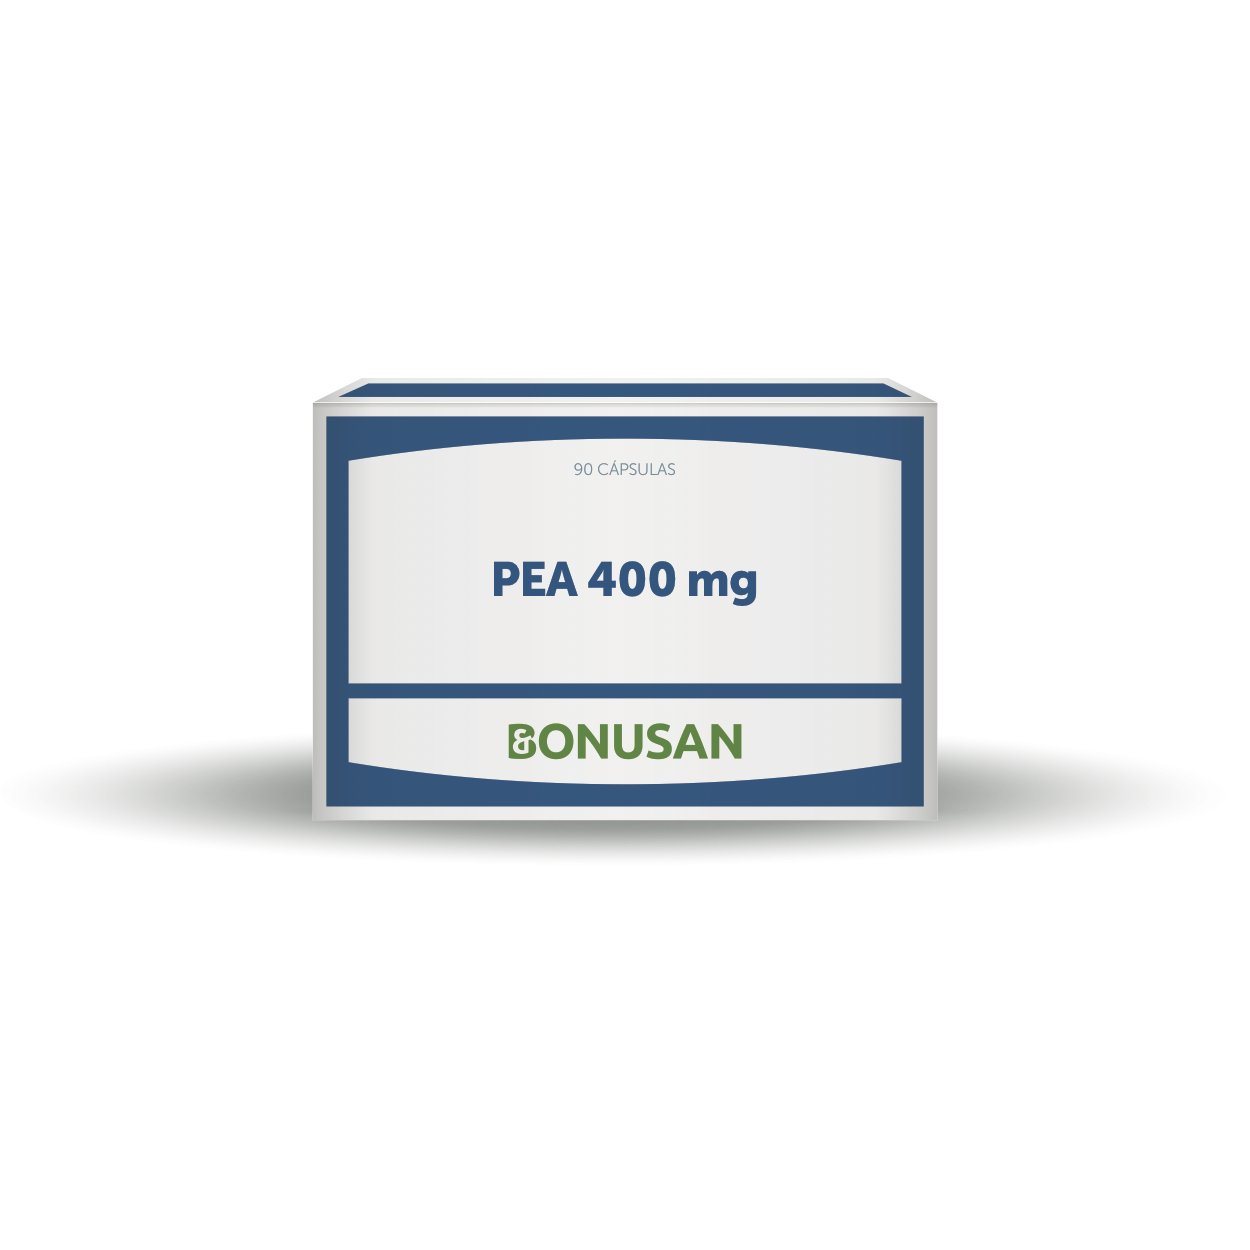 PEA 400 mg 90 Capsulas | Bonusan - Dietetica Ferrer